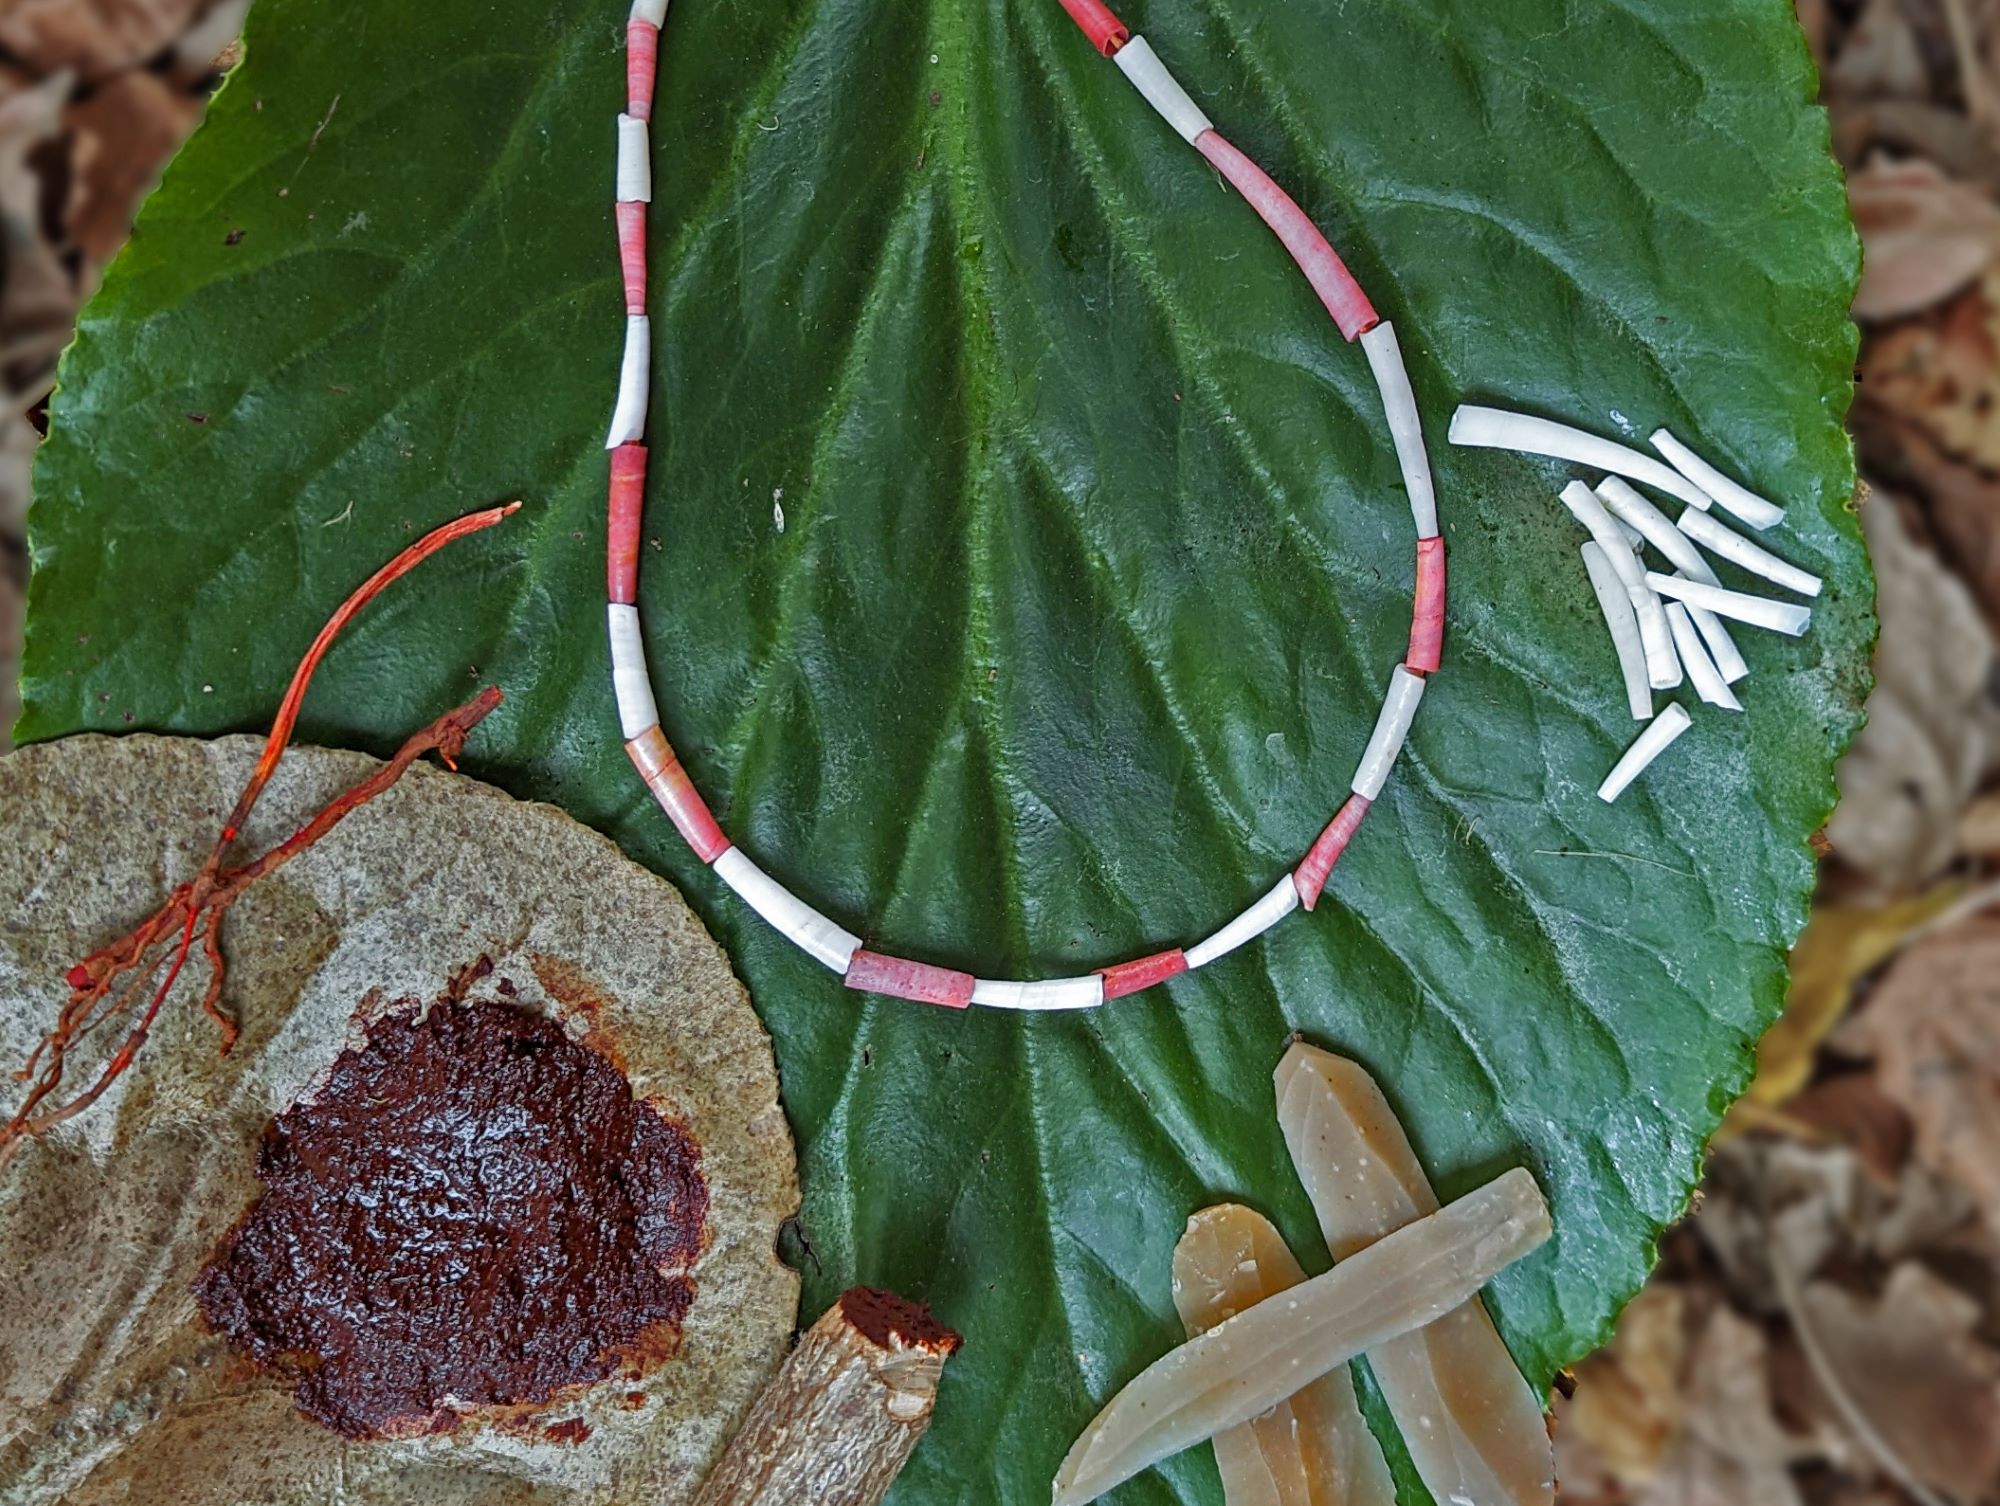 Réplique expérimentale de perles de coquillage avec le colorant organique rouge natoufien fabriqué à partir des racines de plantes Rubiacées. © Laurent Davin/Creative Commons via Courthouse News